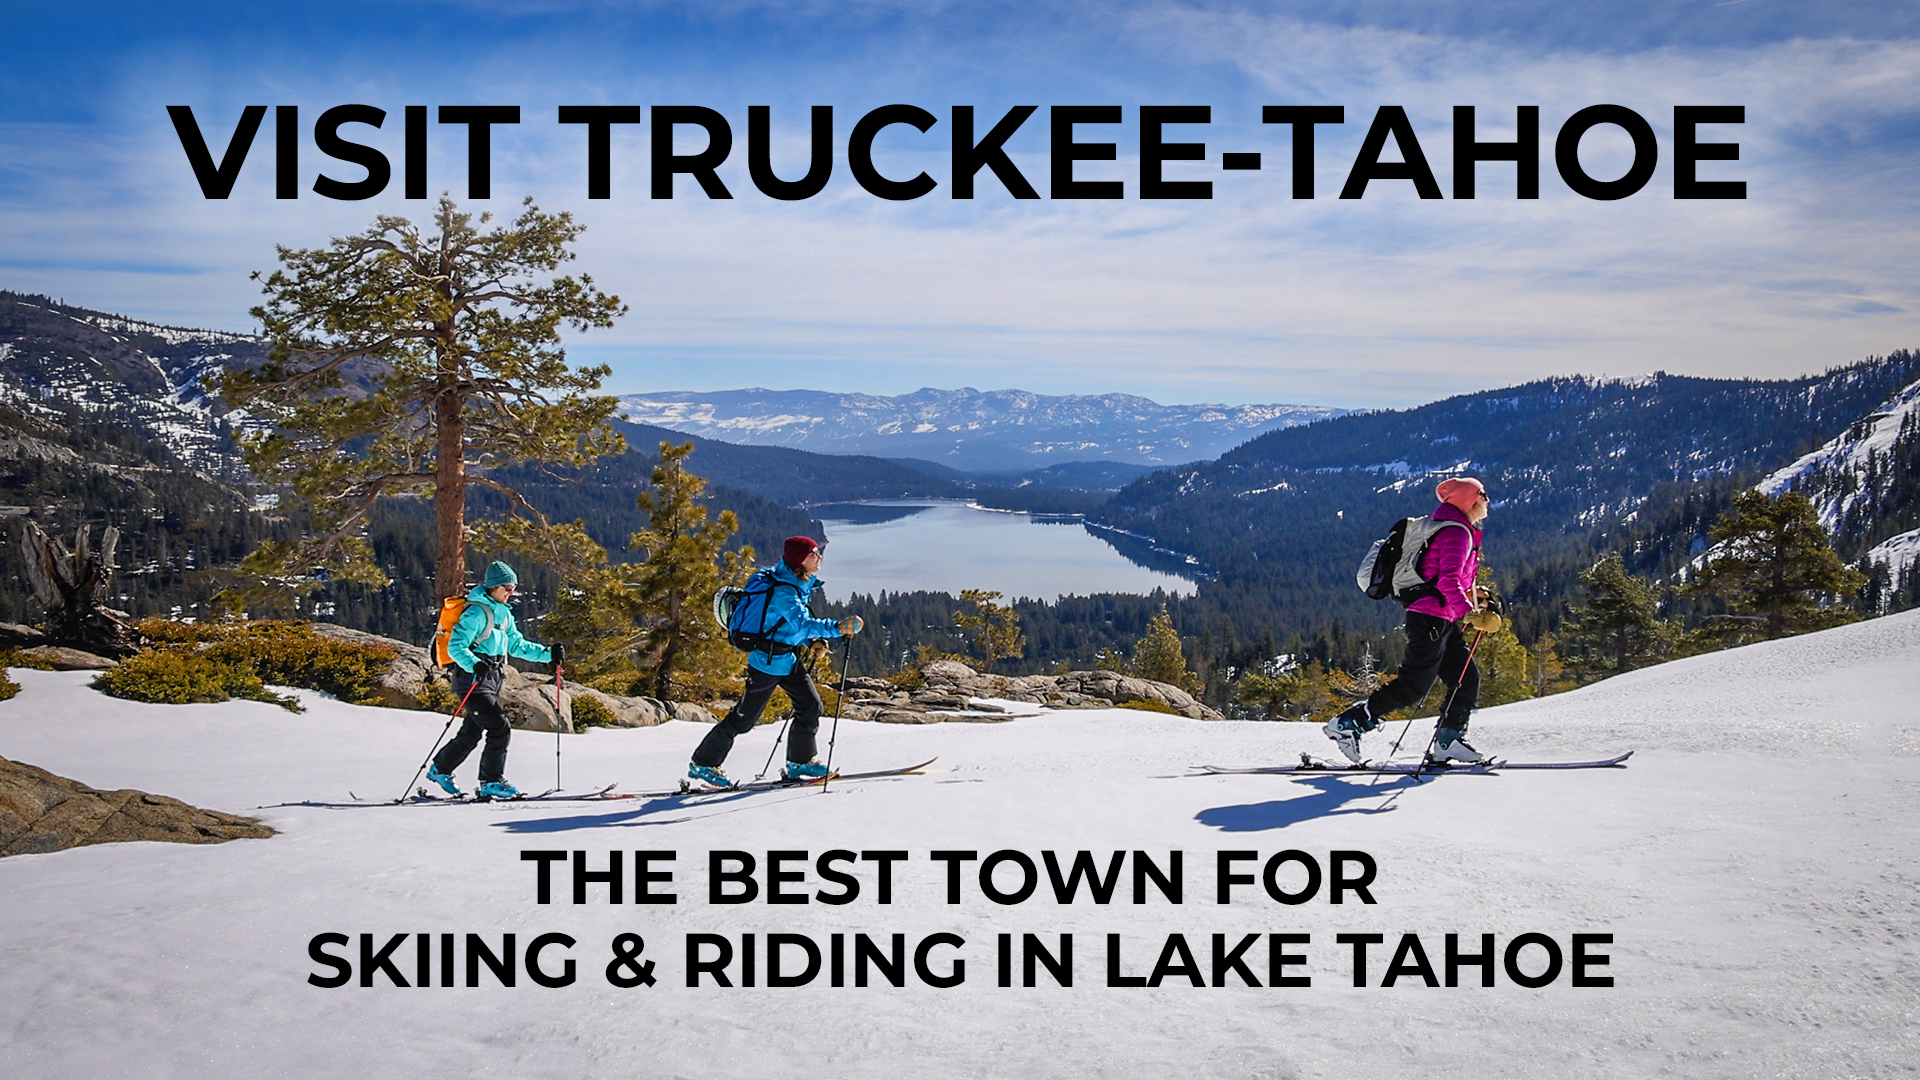 Why visit Truckee Tahoe